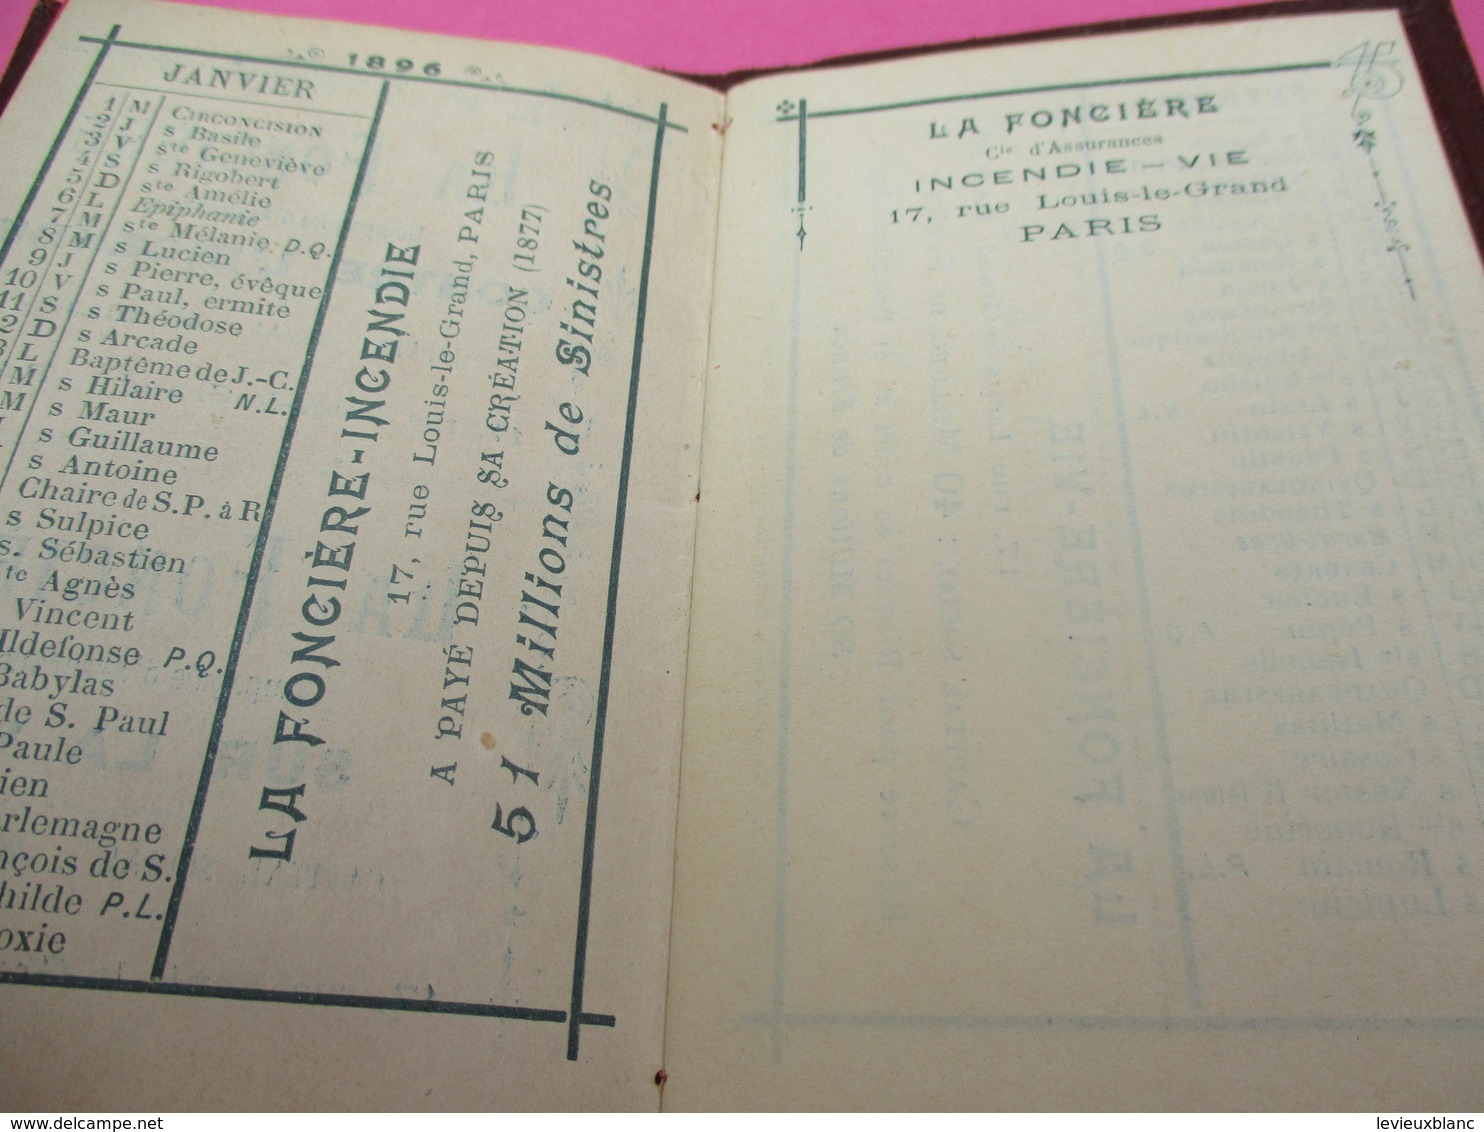 Assurances/ Petit Calendrier Ancien/La Fonciére/ Contre L'Incendie/ Sur La Vie/ 1896          CAL409 - Petit Format : ...-1900